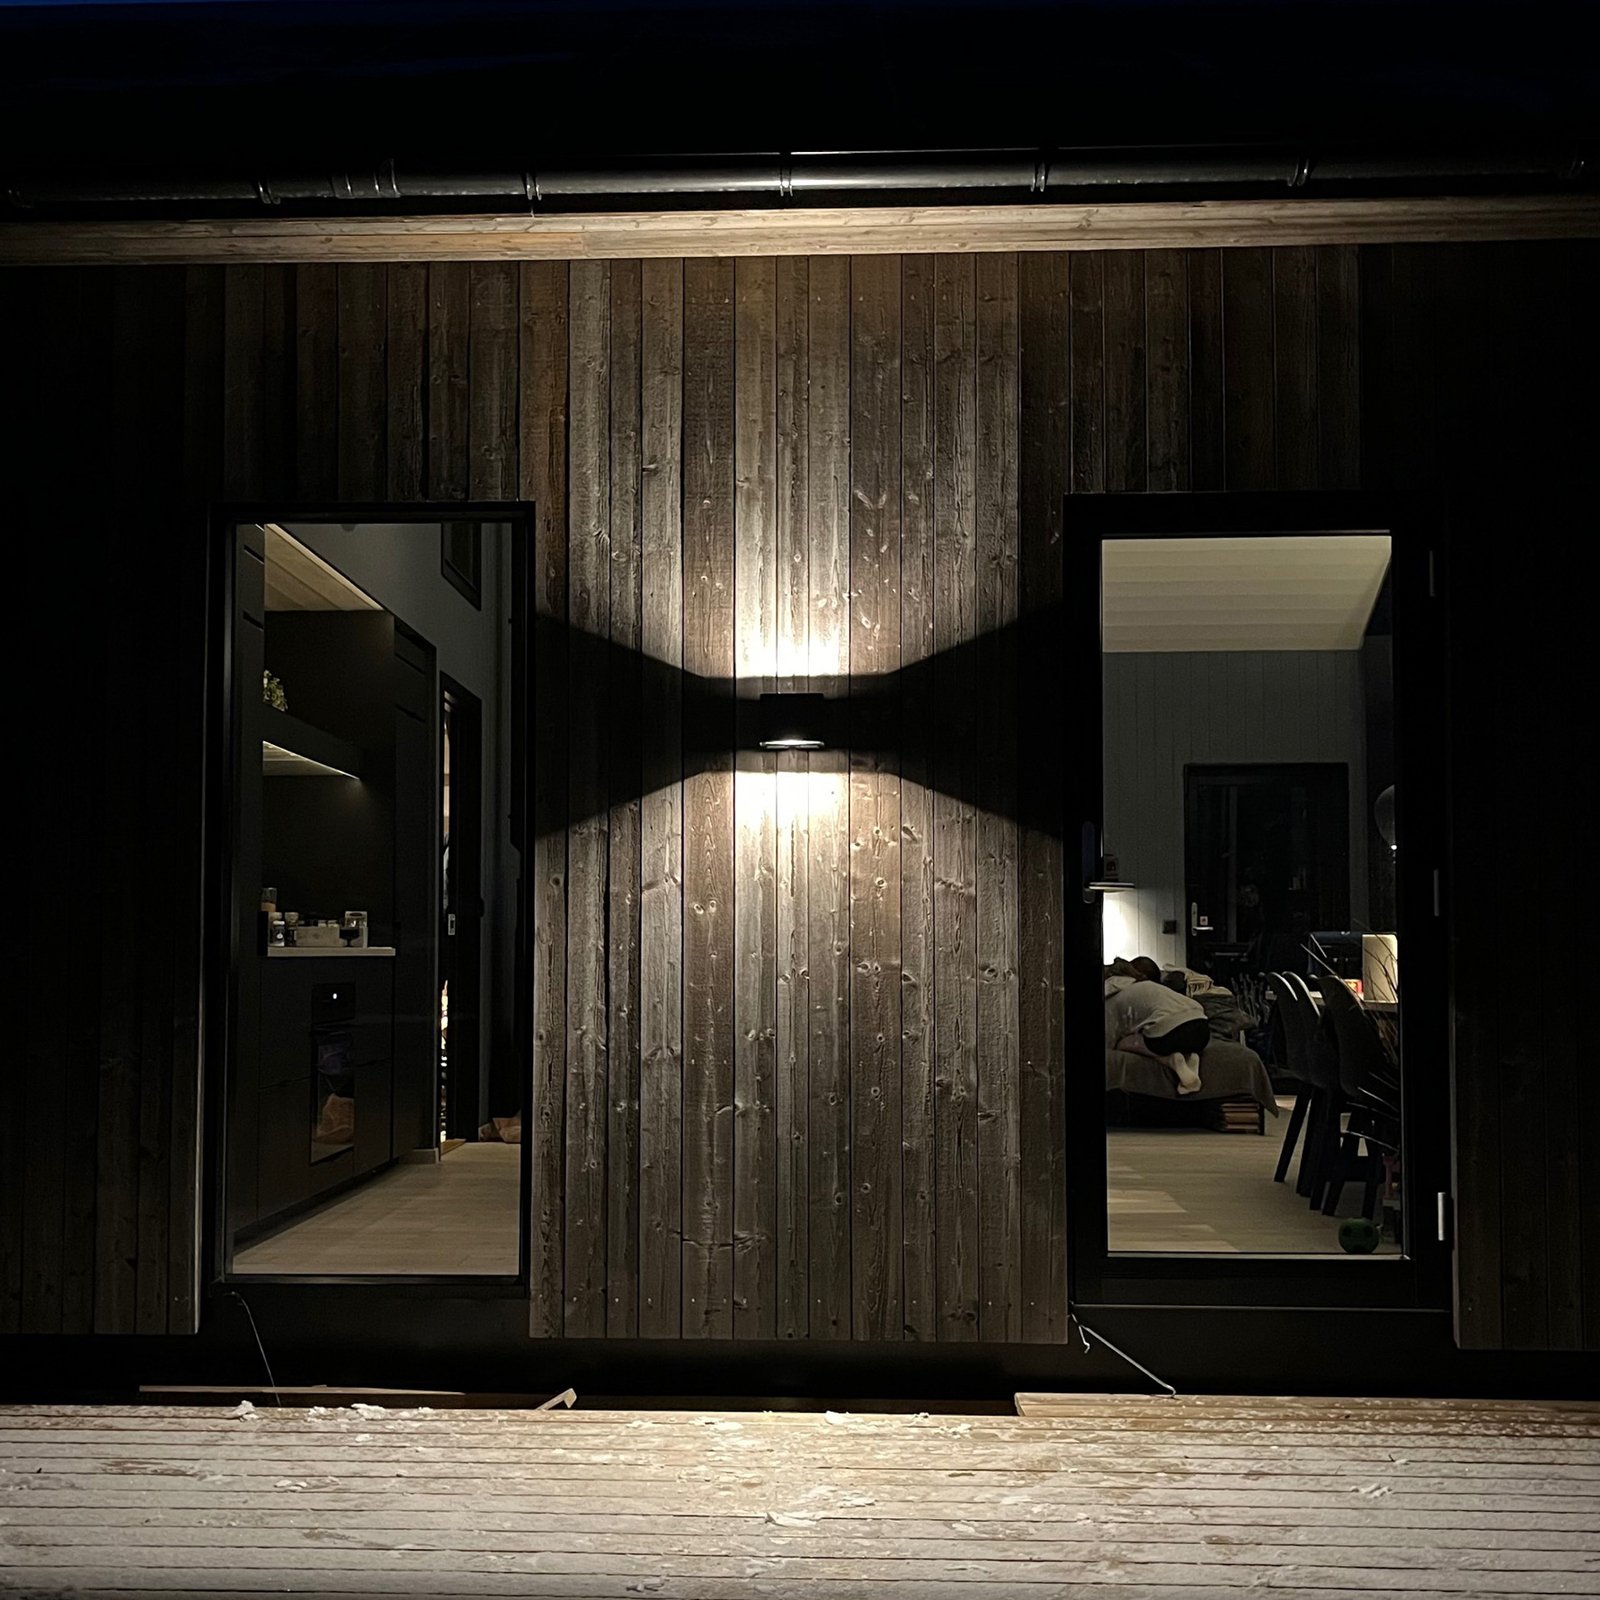 SLC Shadow LED külső fali lámpa up/down 2 x védő